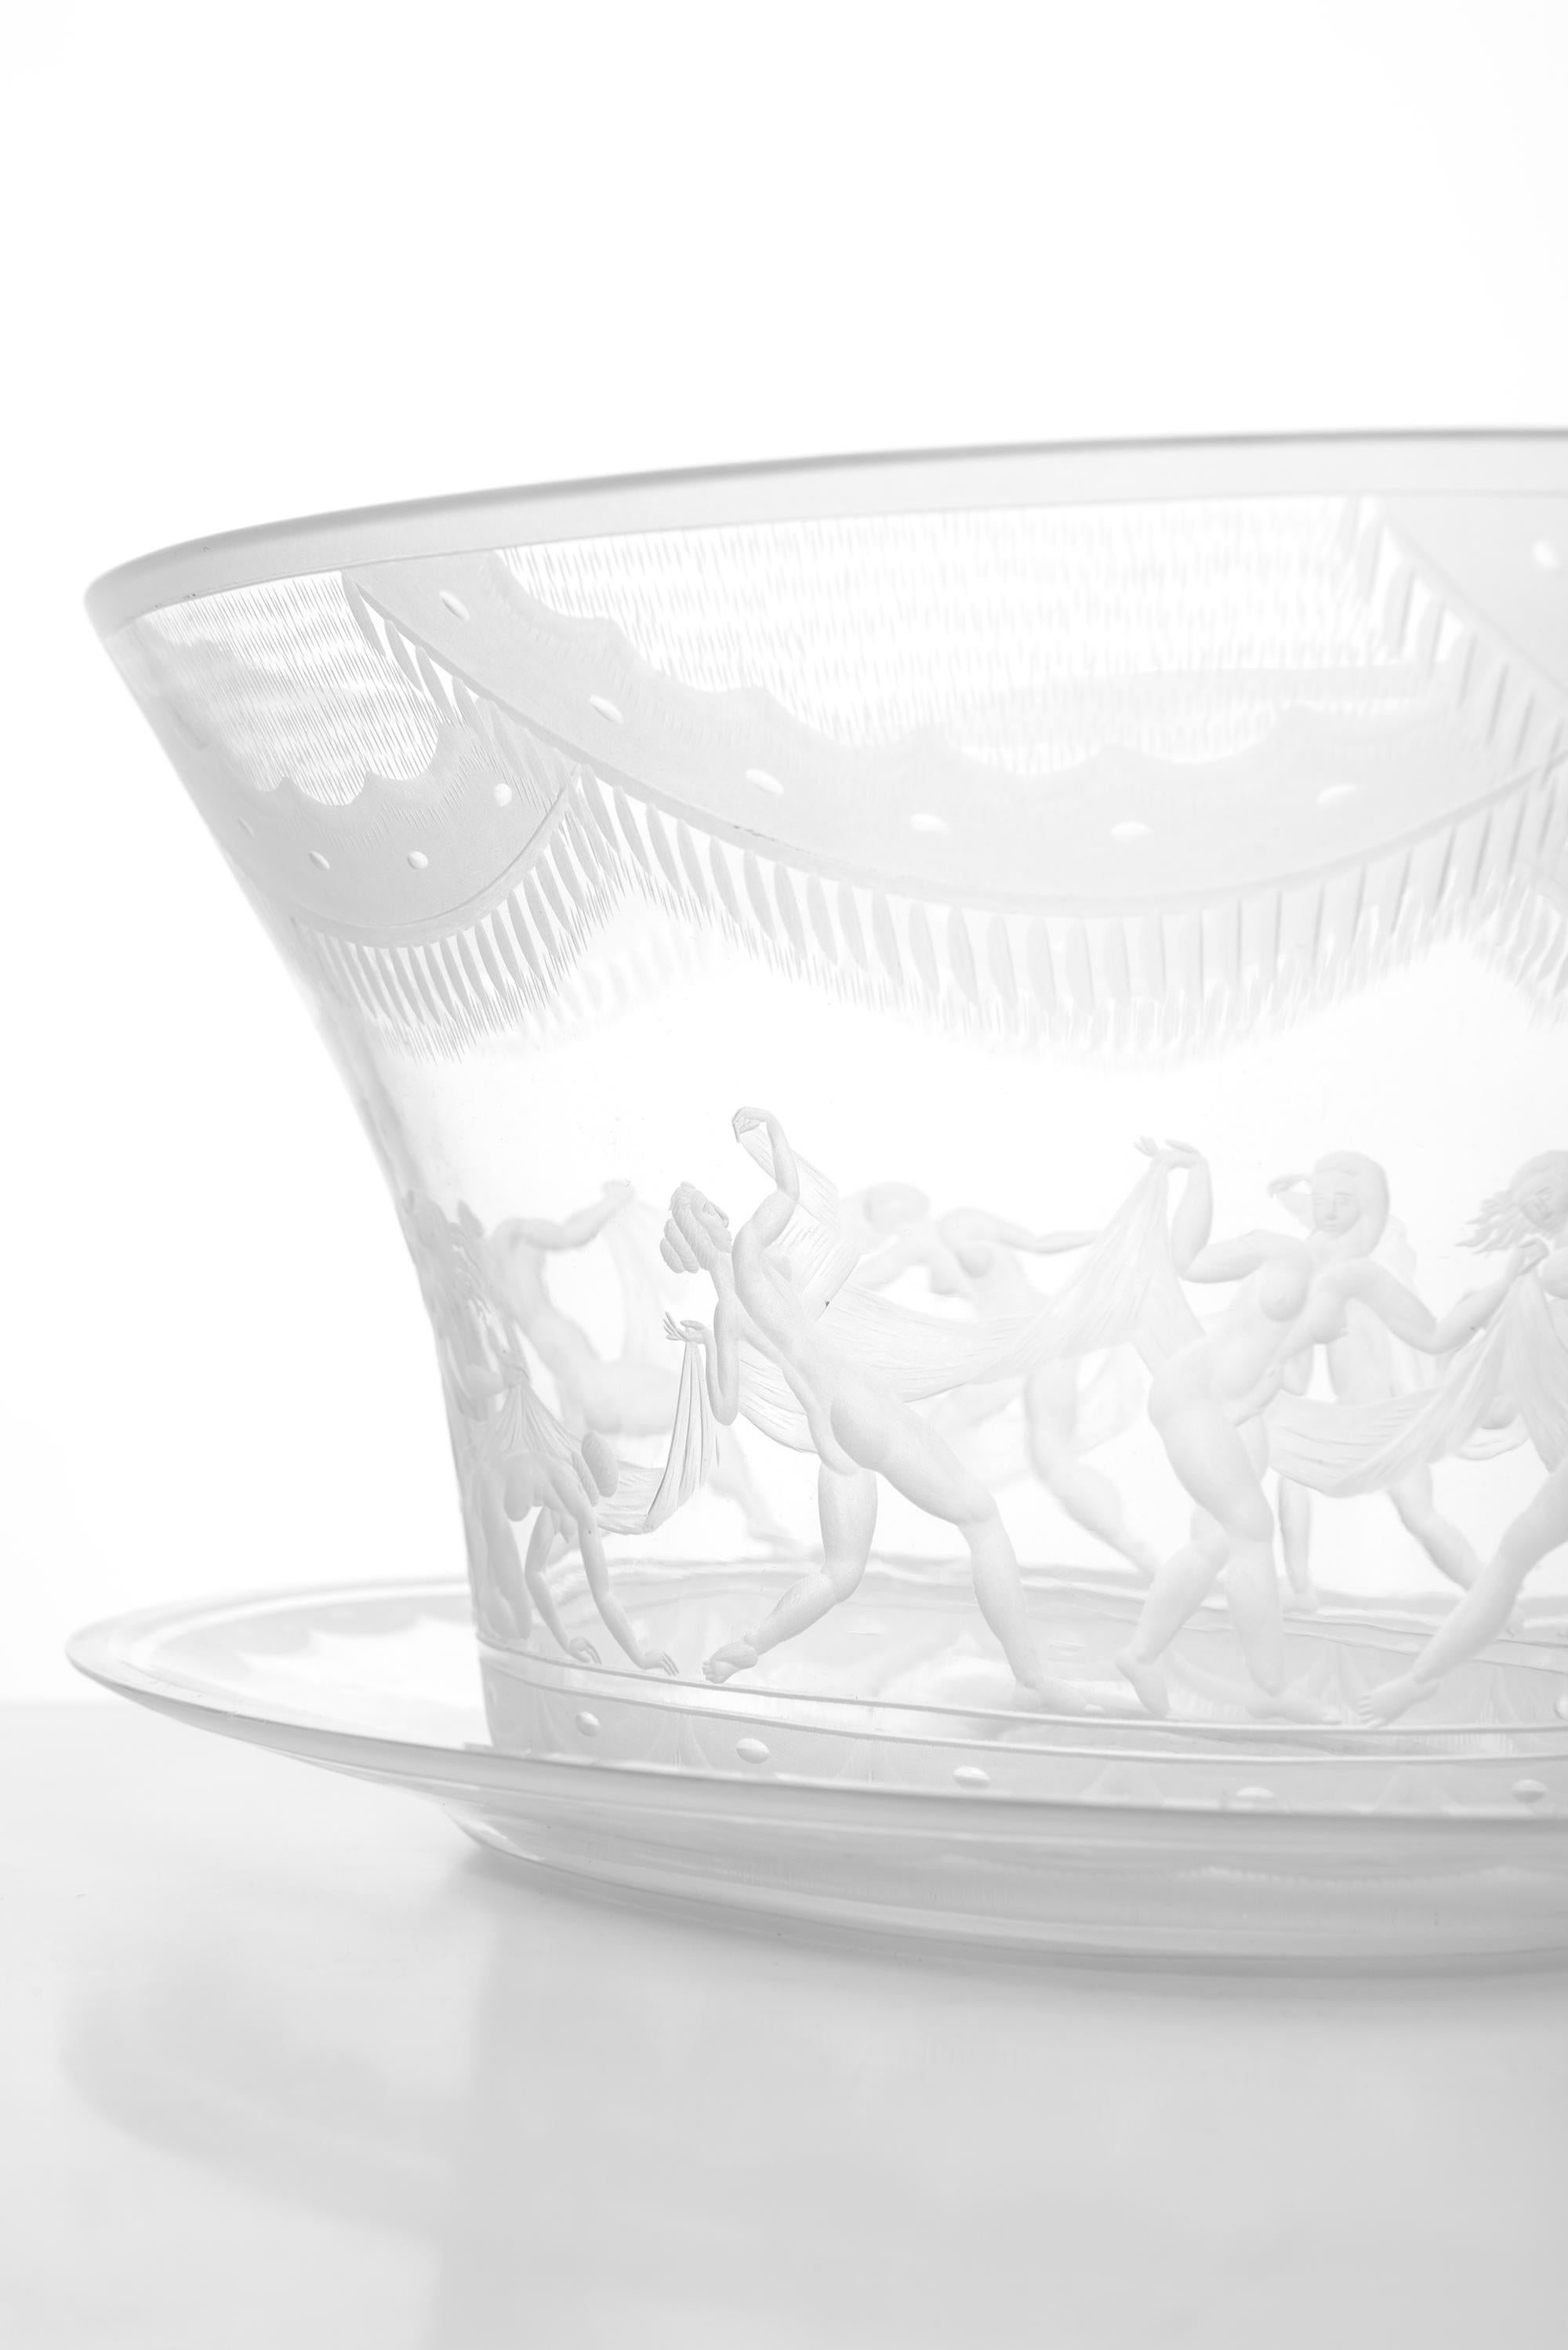 Simon Gate Glass Vase Model Slöjdansen Produced by Orrefors in Sweden For Sale 1